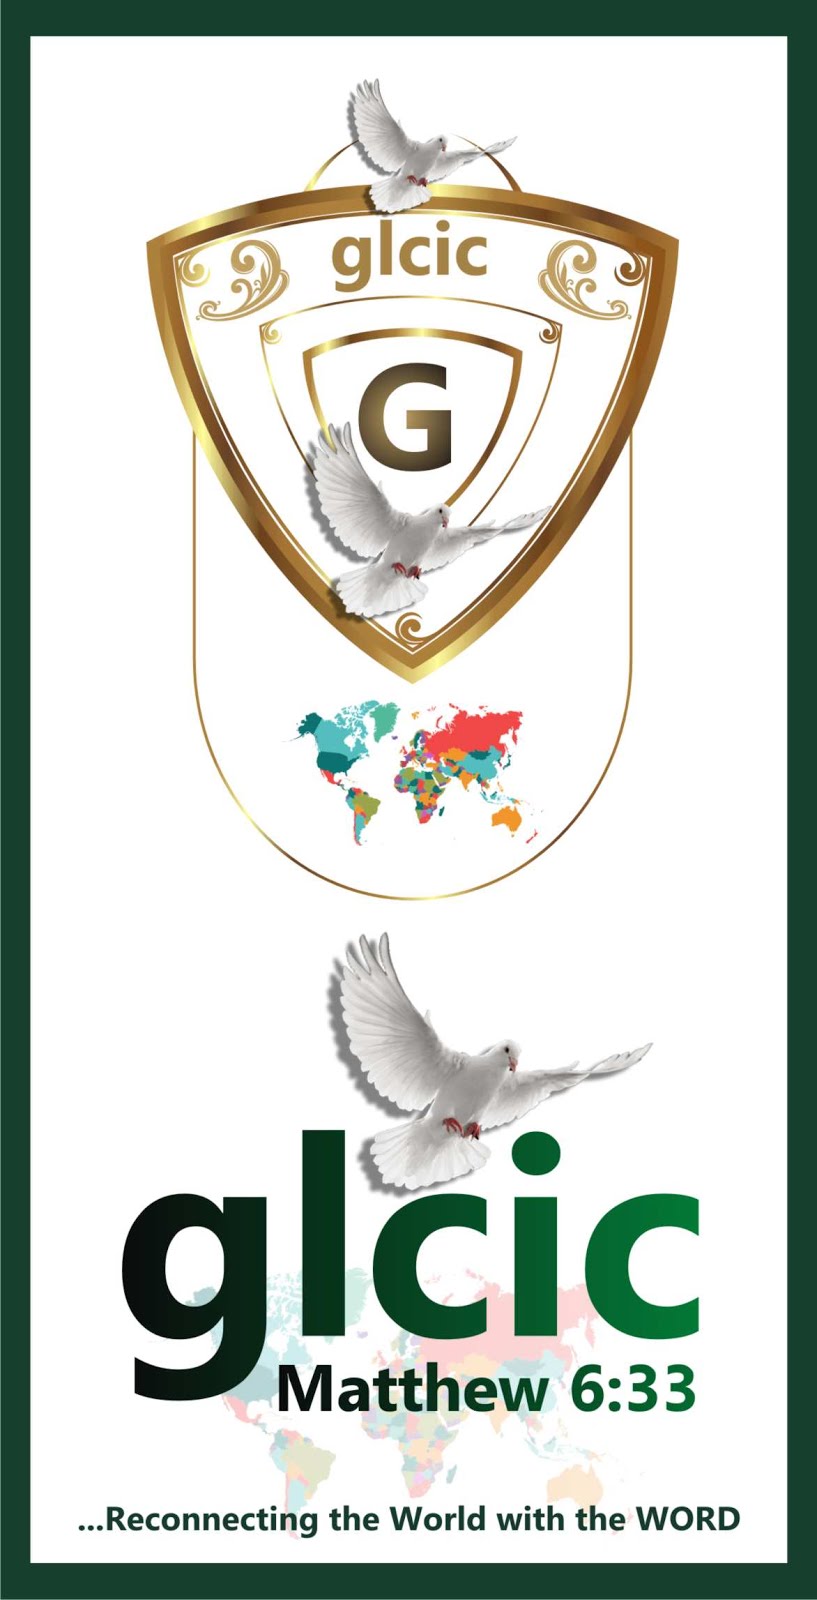 GLCIC WORLDWIDE